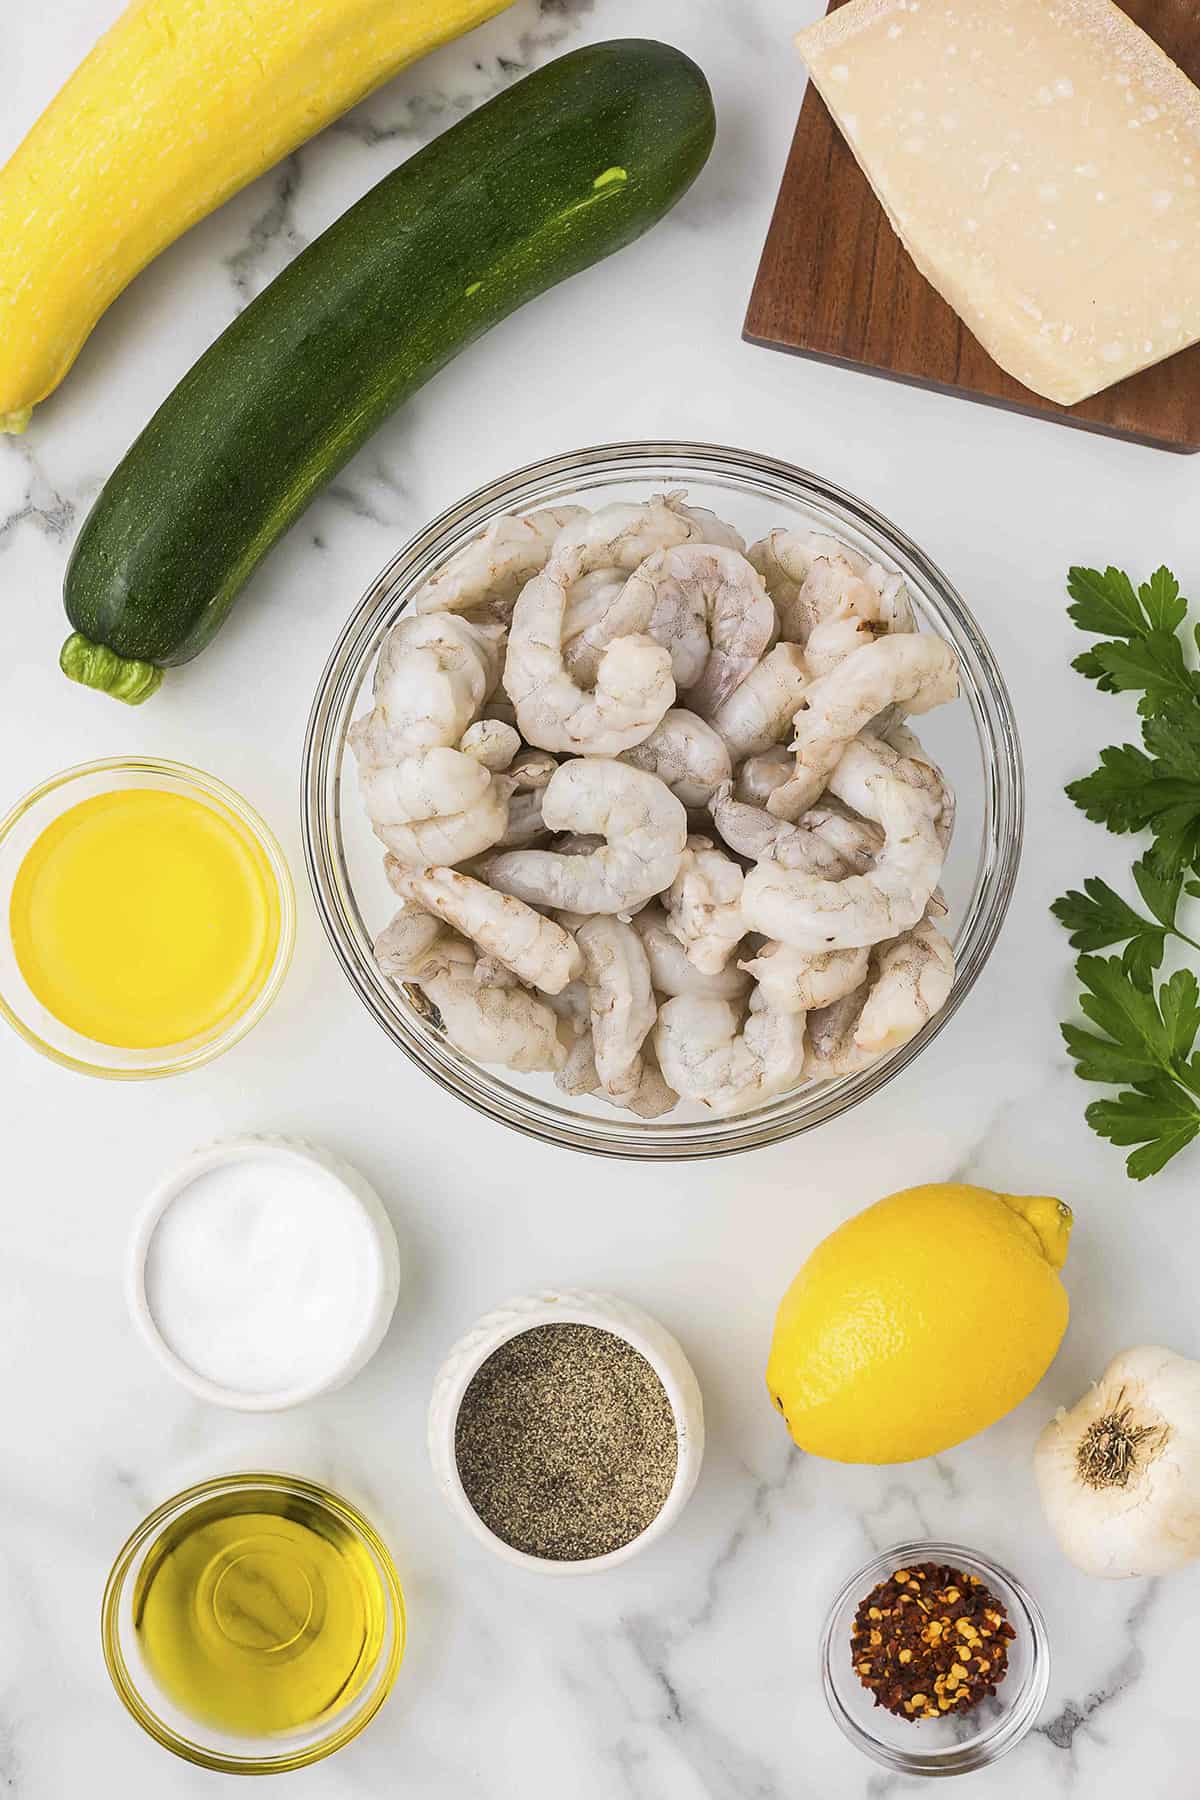 Ingredients for baking shrimp scampi recipe.